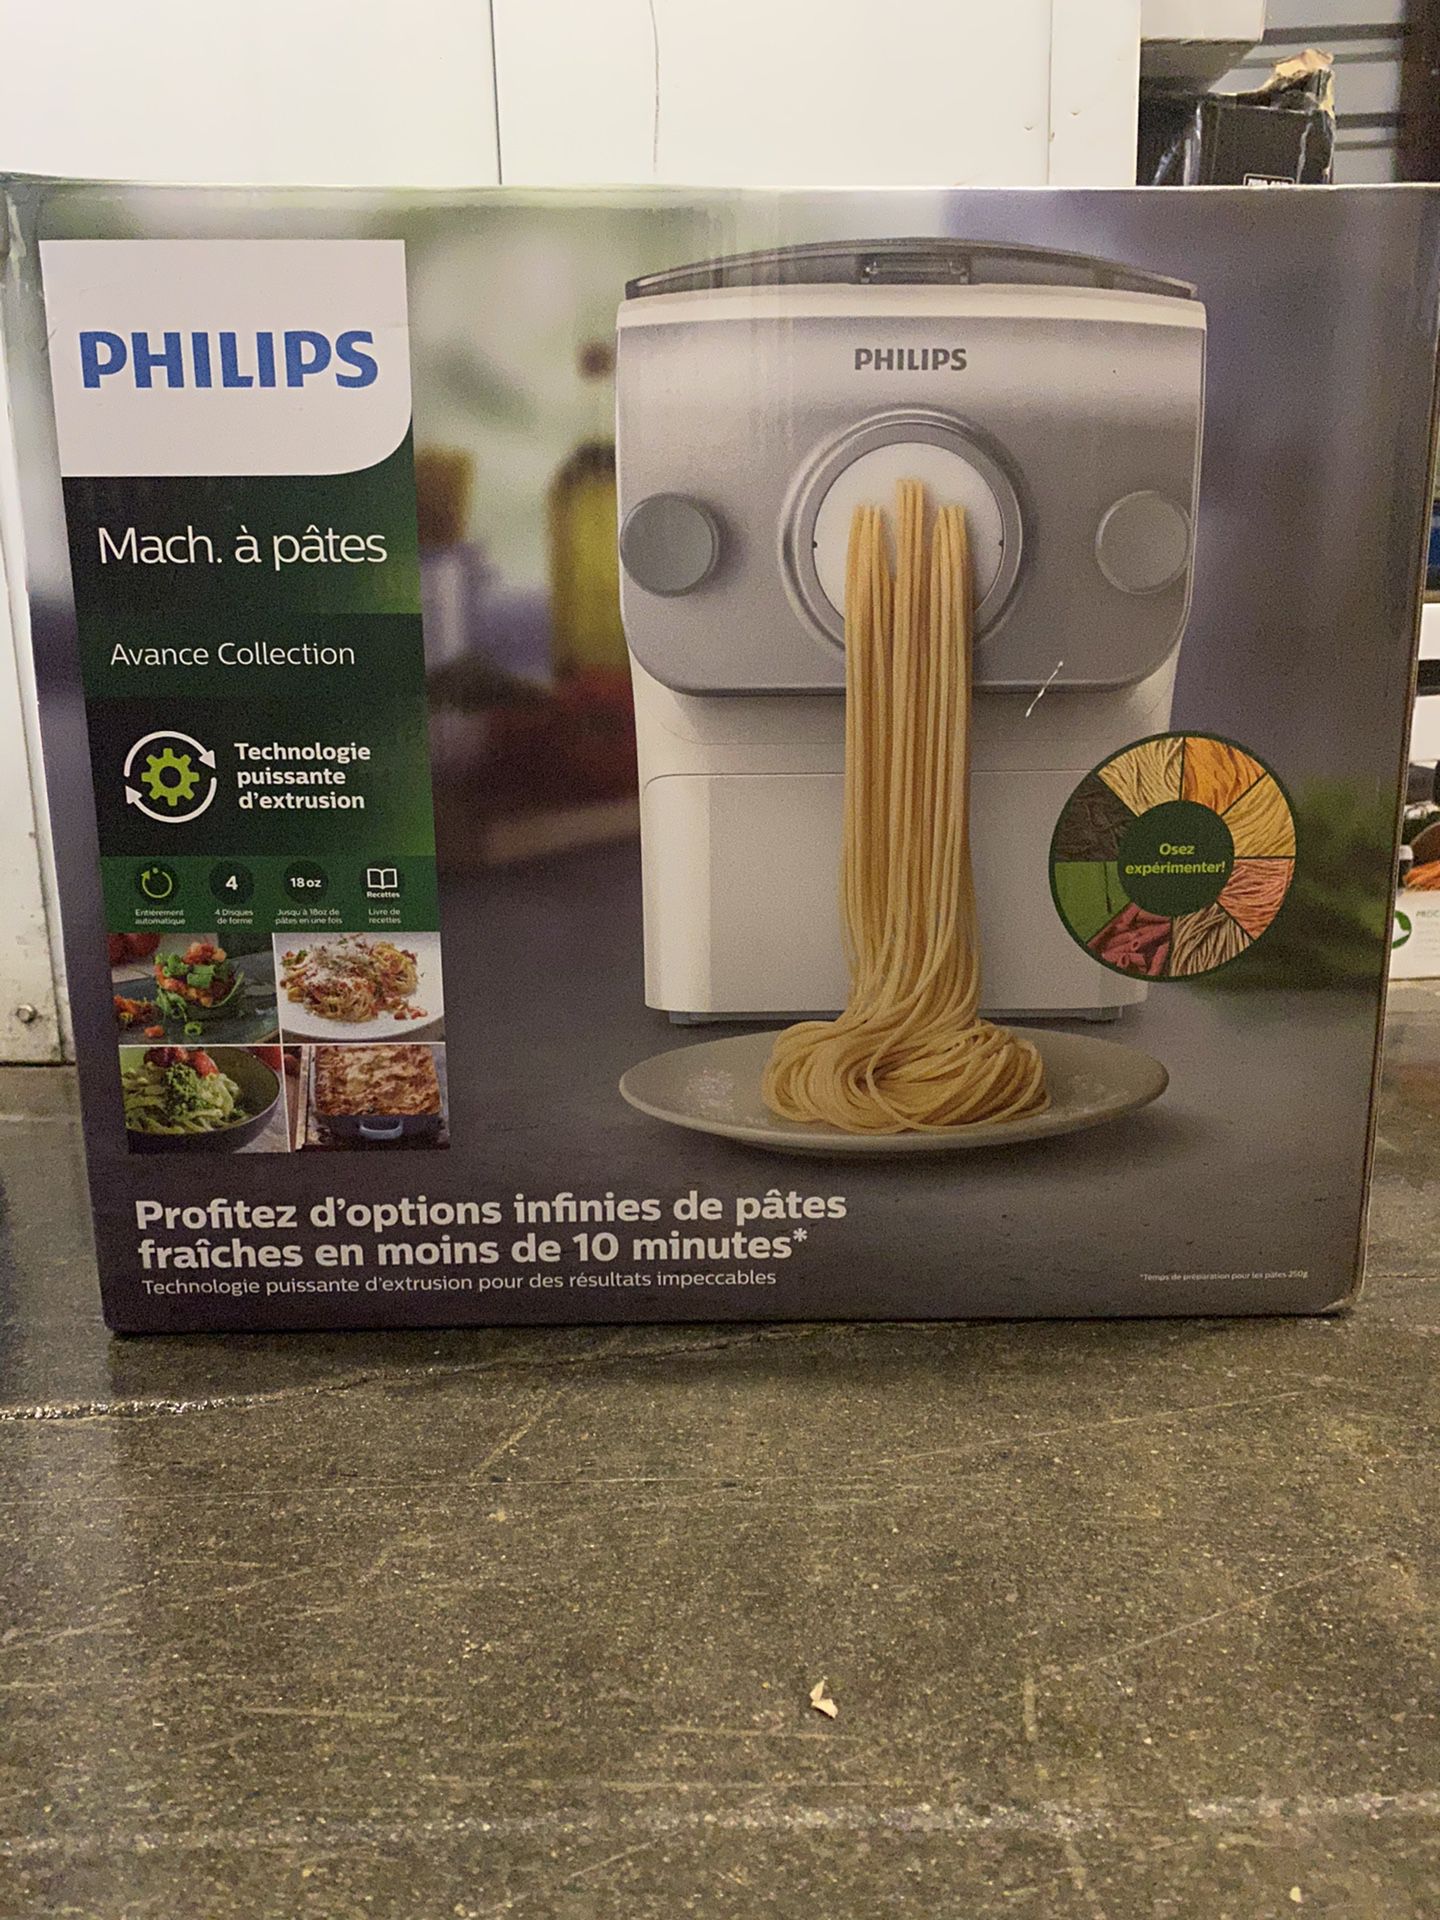 Phillips Pasta Maker